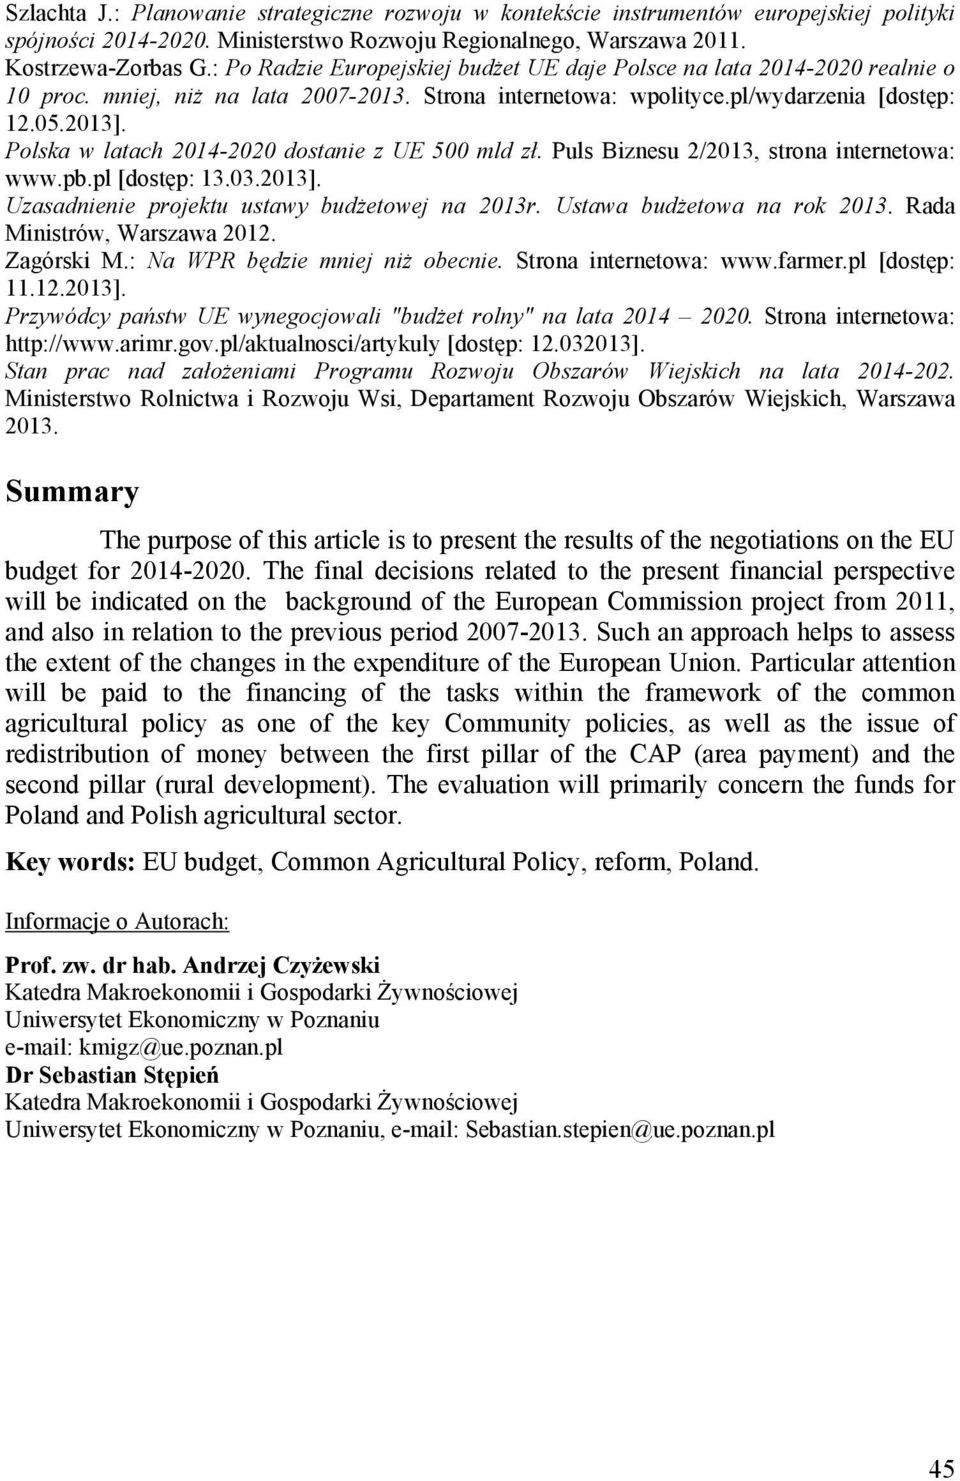 Polska w latach 2014-2020 dostanie z UE 500 mld zł. Puls Biznesu 2/2013, strona internetowa: www.pb.pl [dostęp: 13.03.2013]. Uzasadnienie projektu ustawy budżetowej na 2013r.